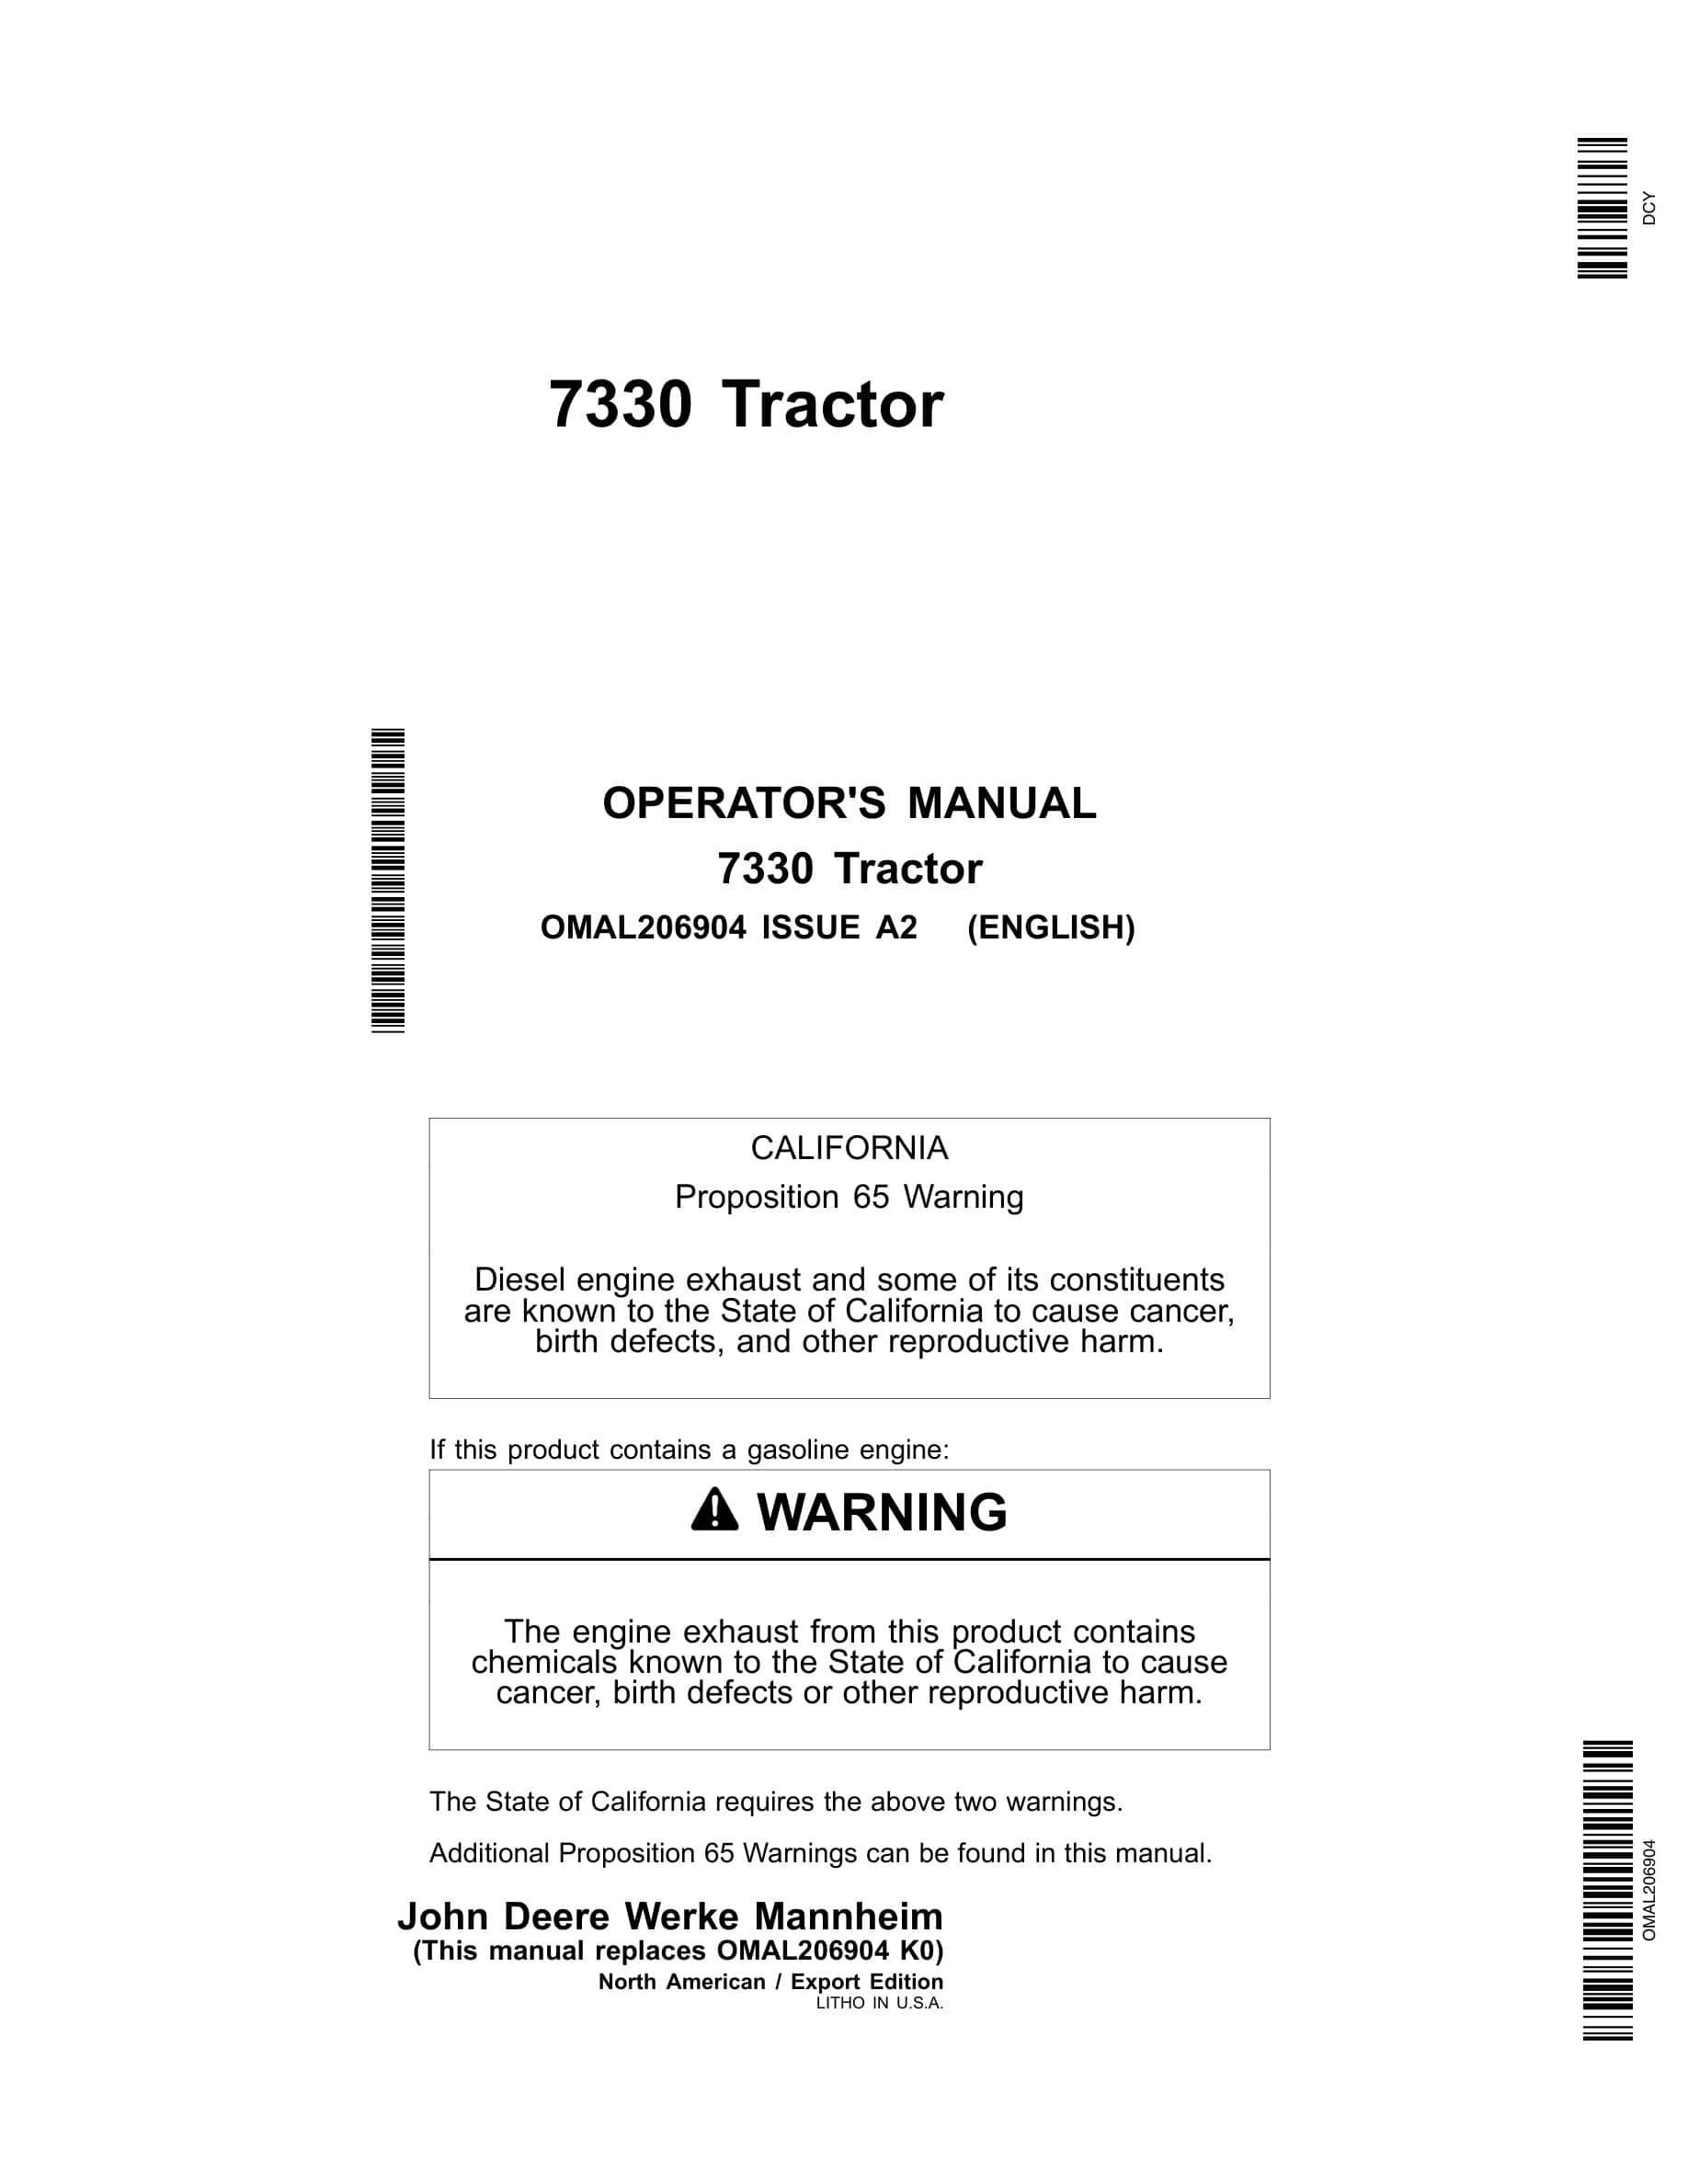 John Deere 7330 Tractors Operator Manual OMAL206904-1